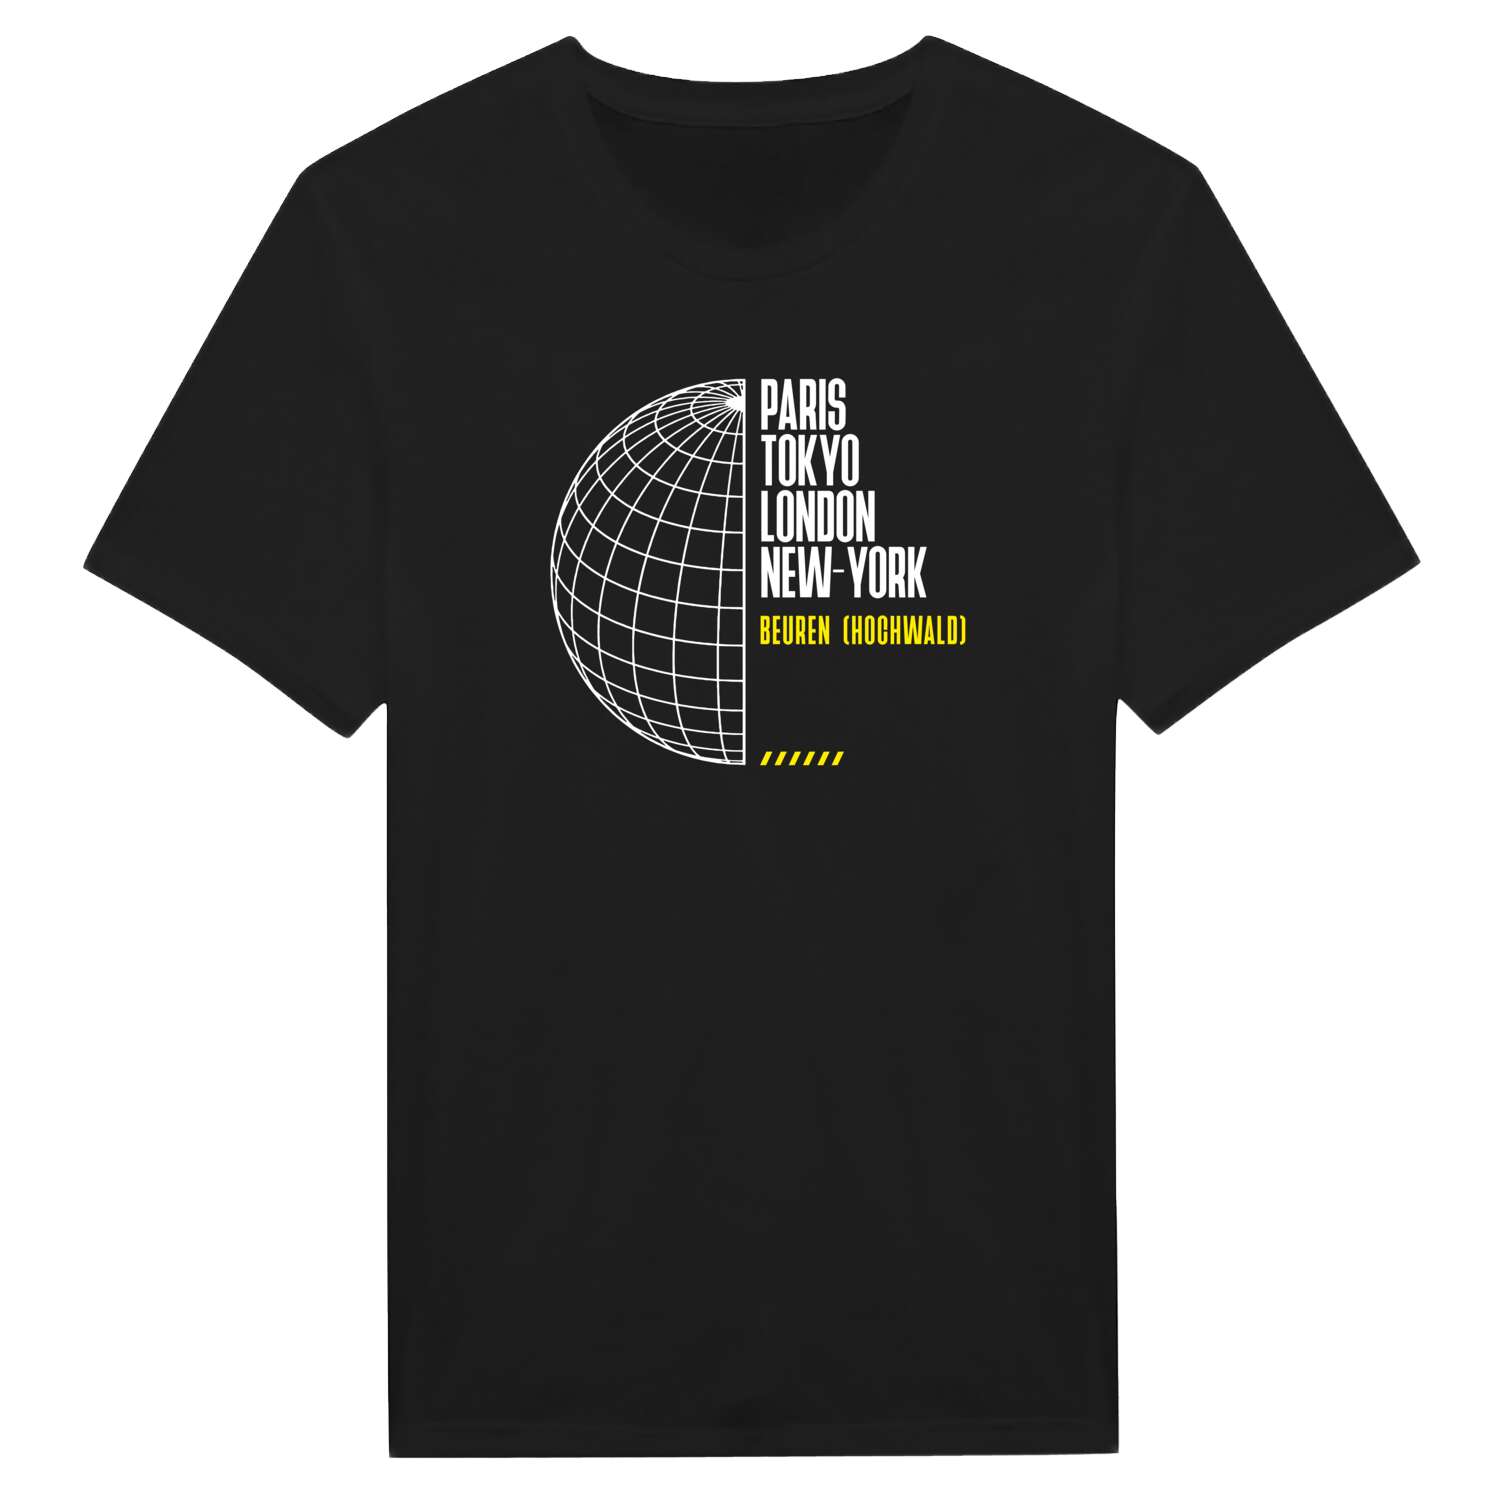 Beuren (Hochwald) T-Shirt »Paris Tokyo London«